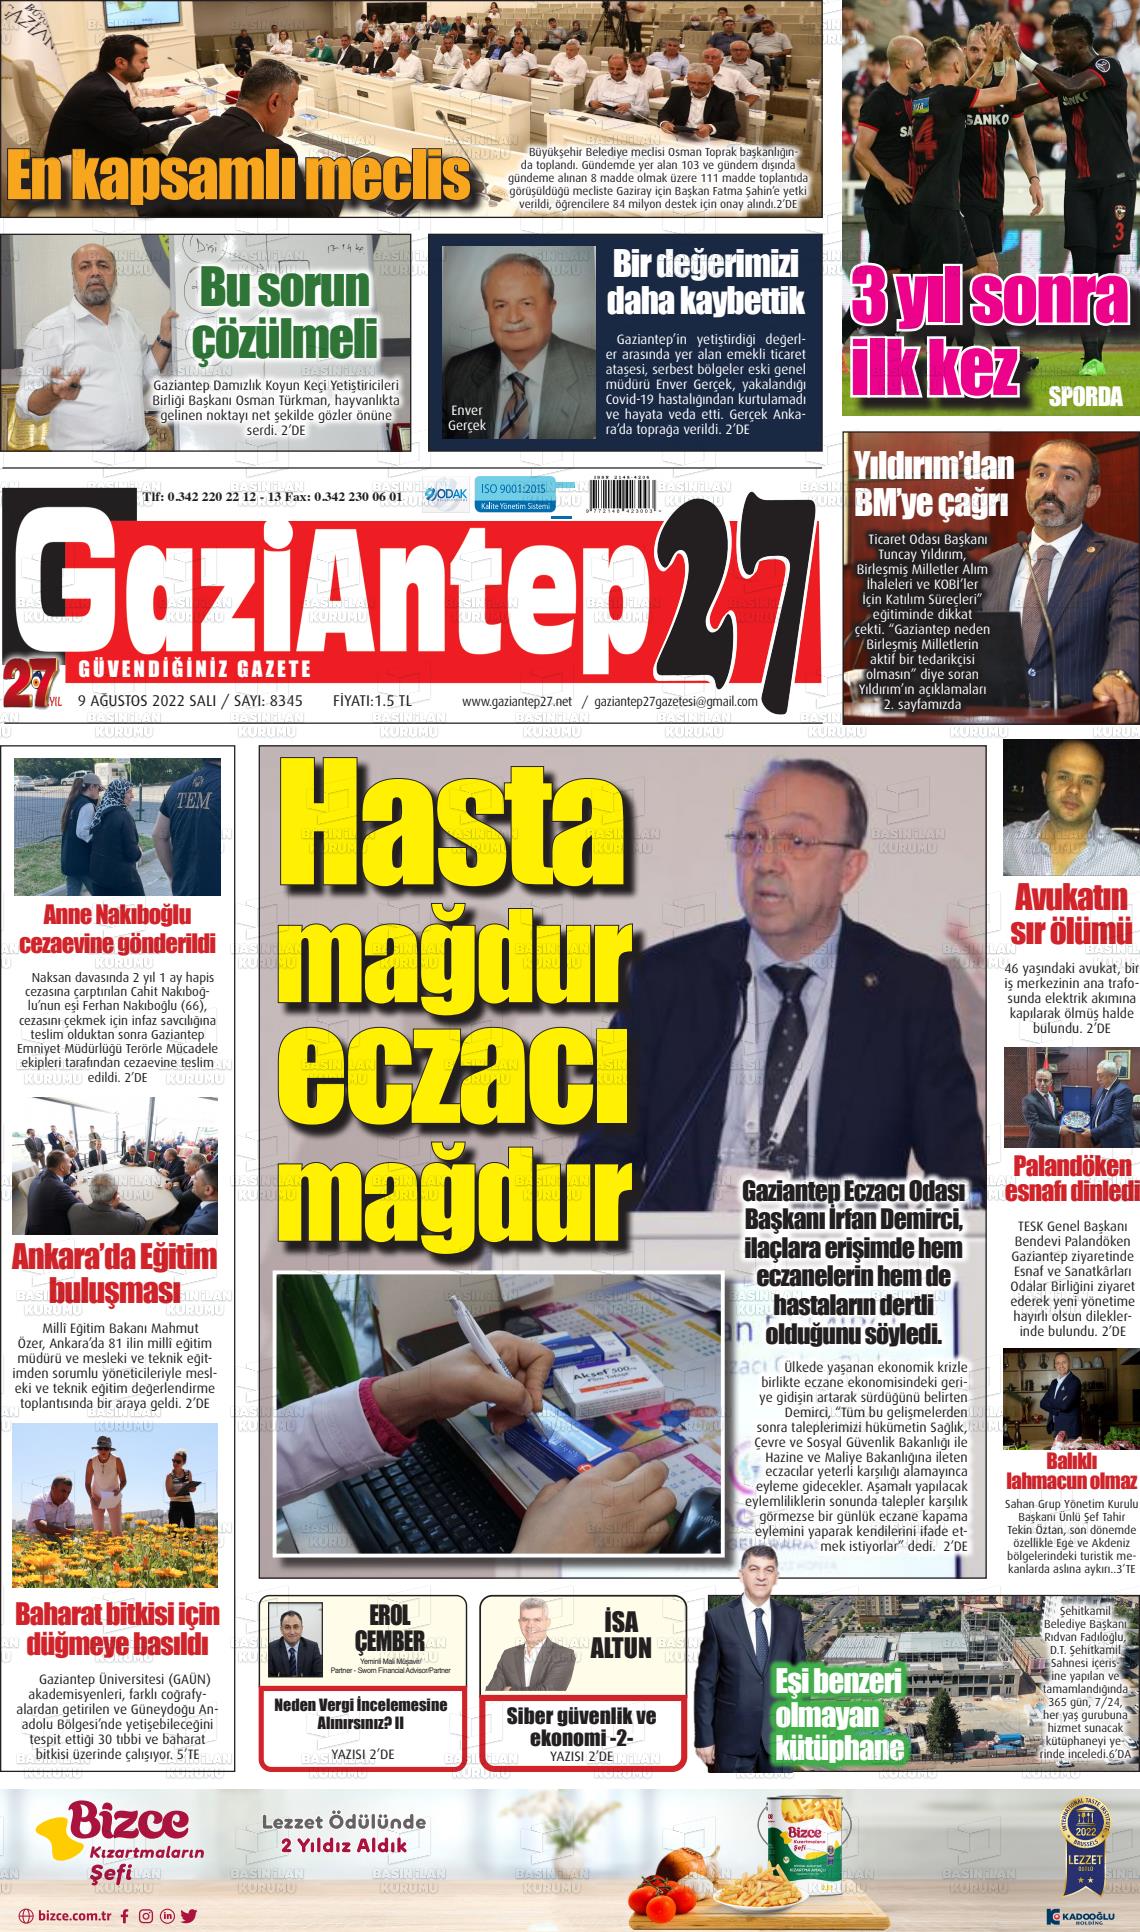 09 Ağustos 2022 Gaziantep 27 Gazete Manşeti